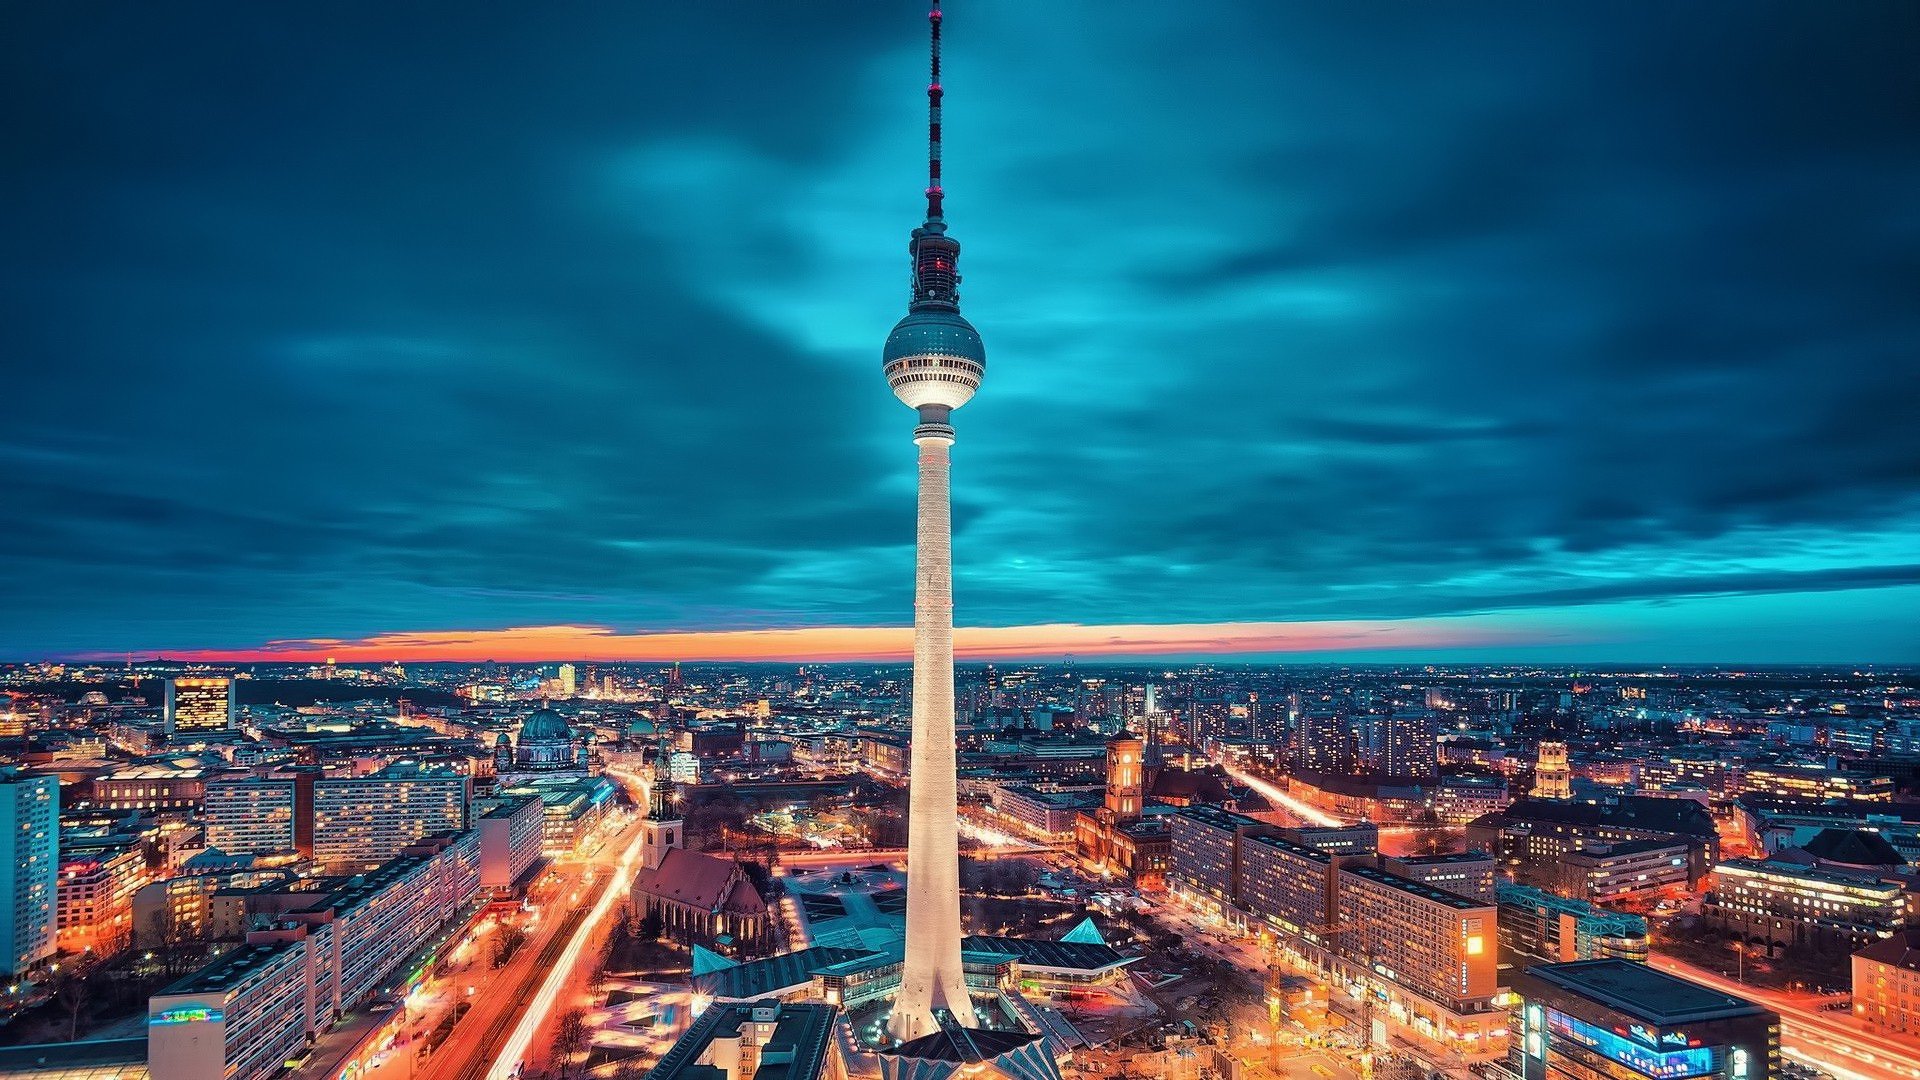 Berlin, Alexanderplatz, Fernsehturm Wallpapers HD / Desktop and Mobile